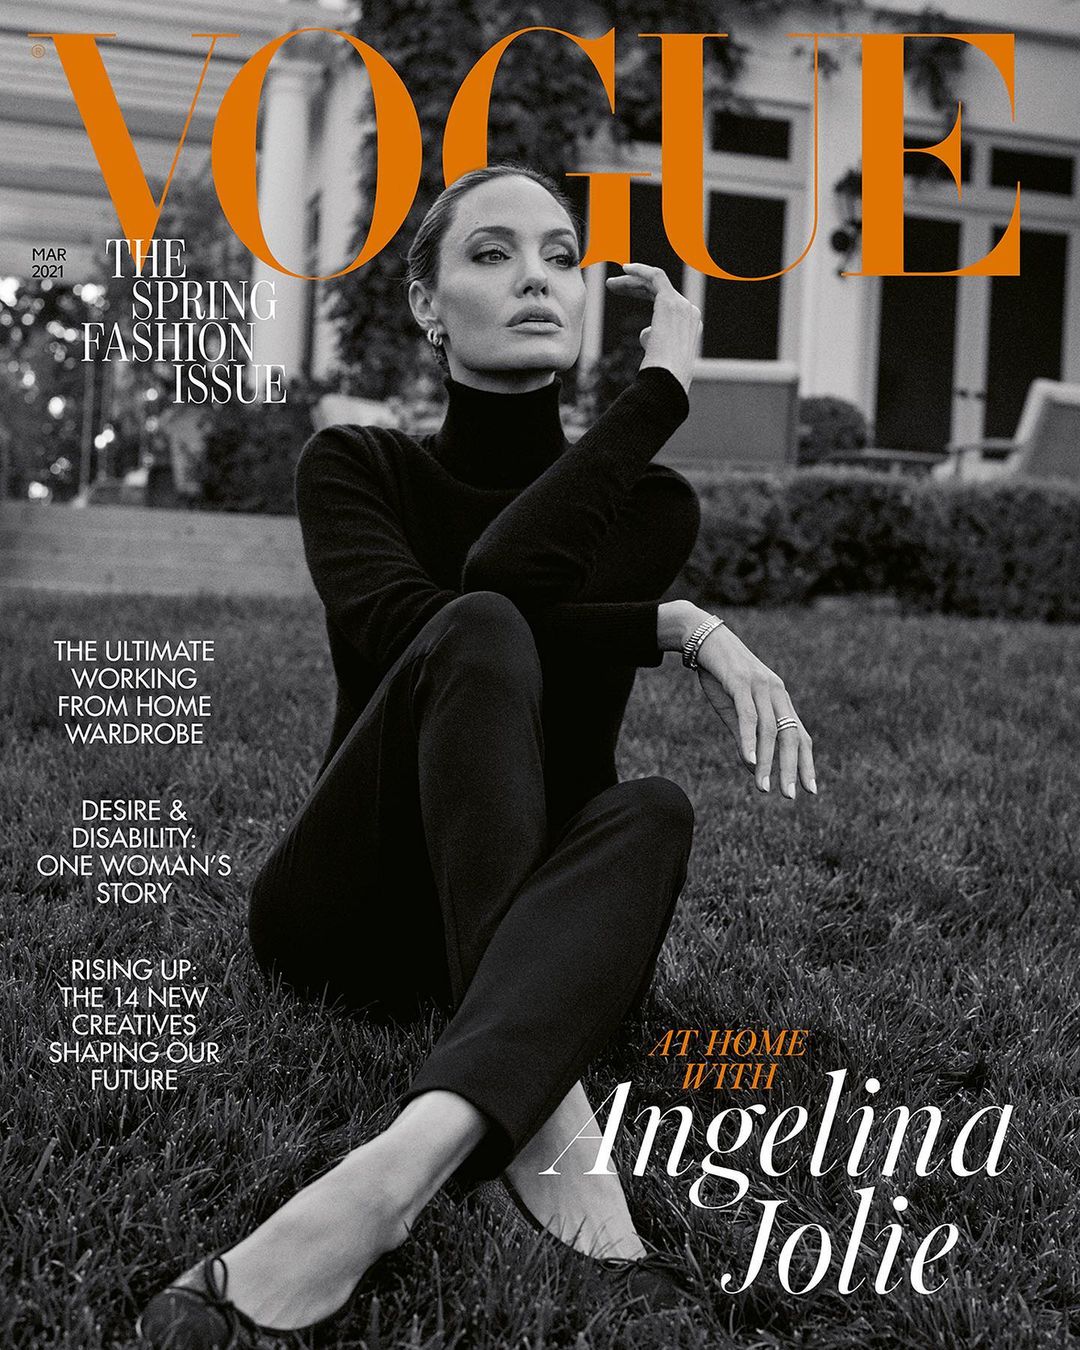 «В 40 я чувствую себя намного комфортнее», – Анджелина Джоли дала редкое интервью